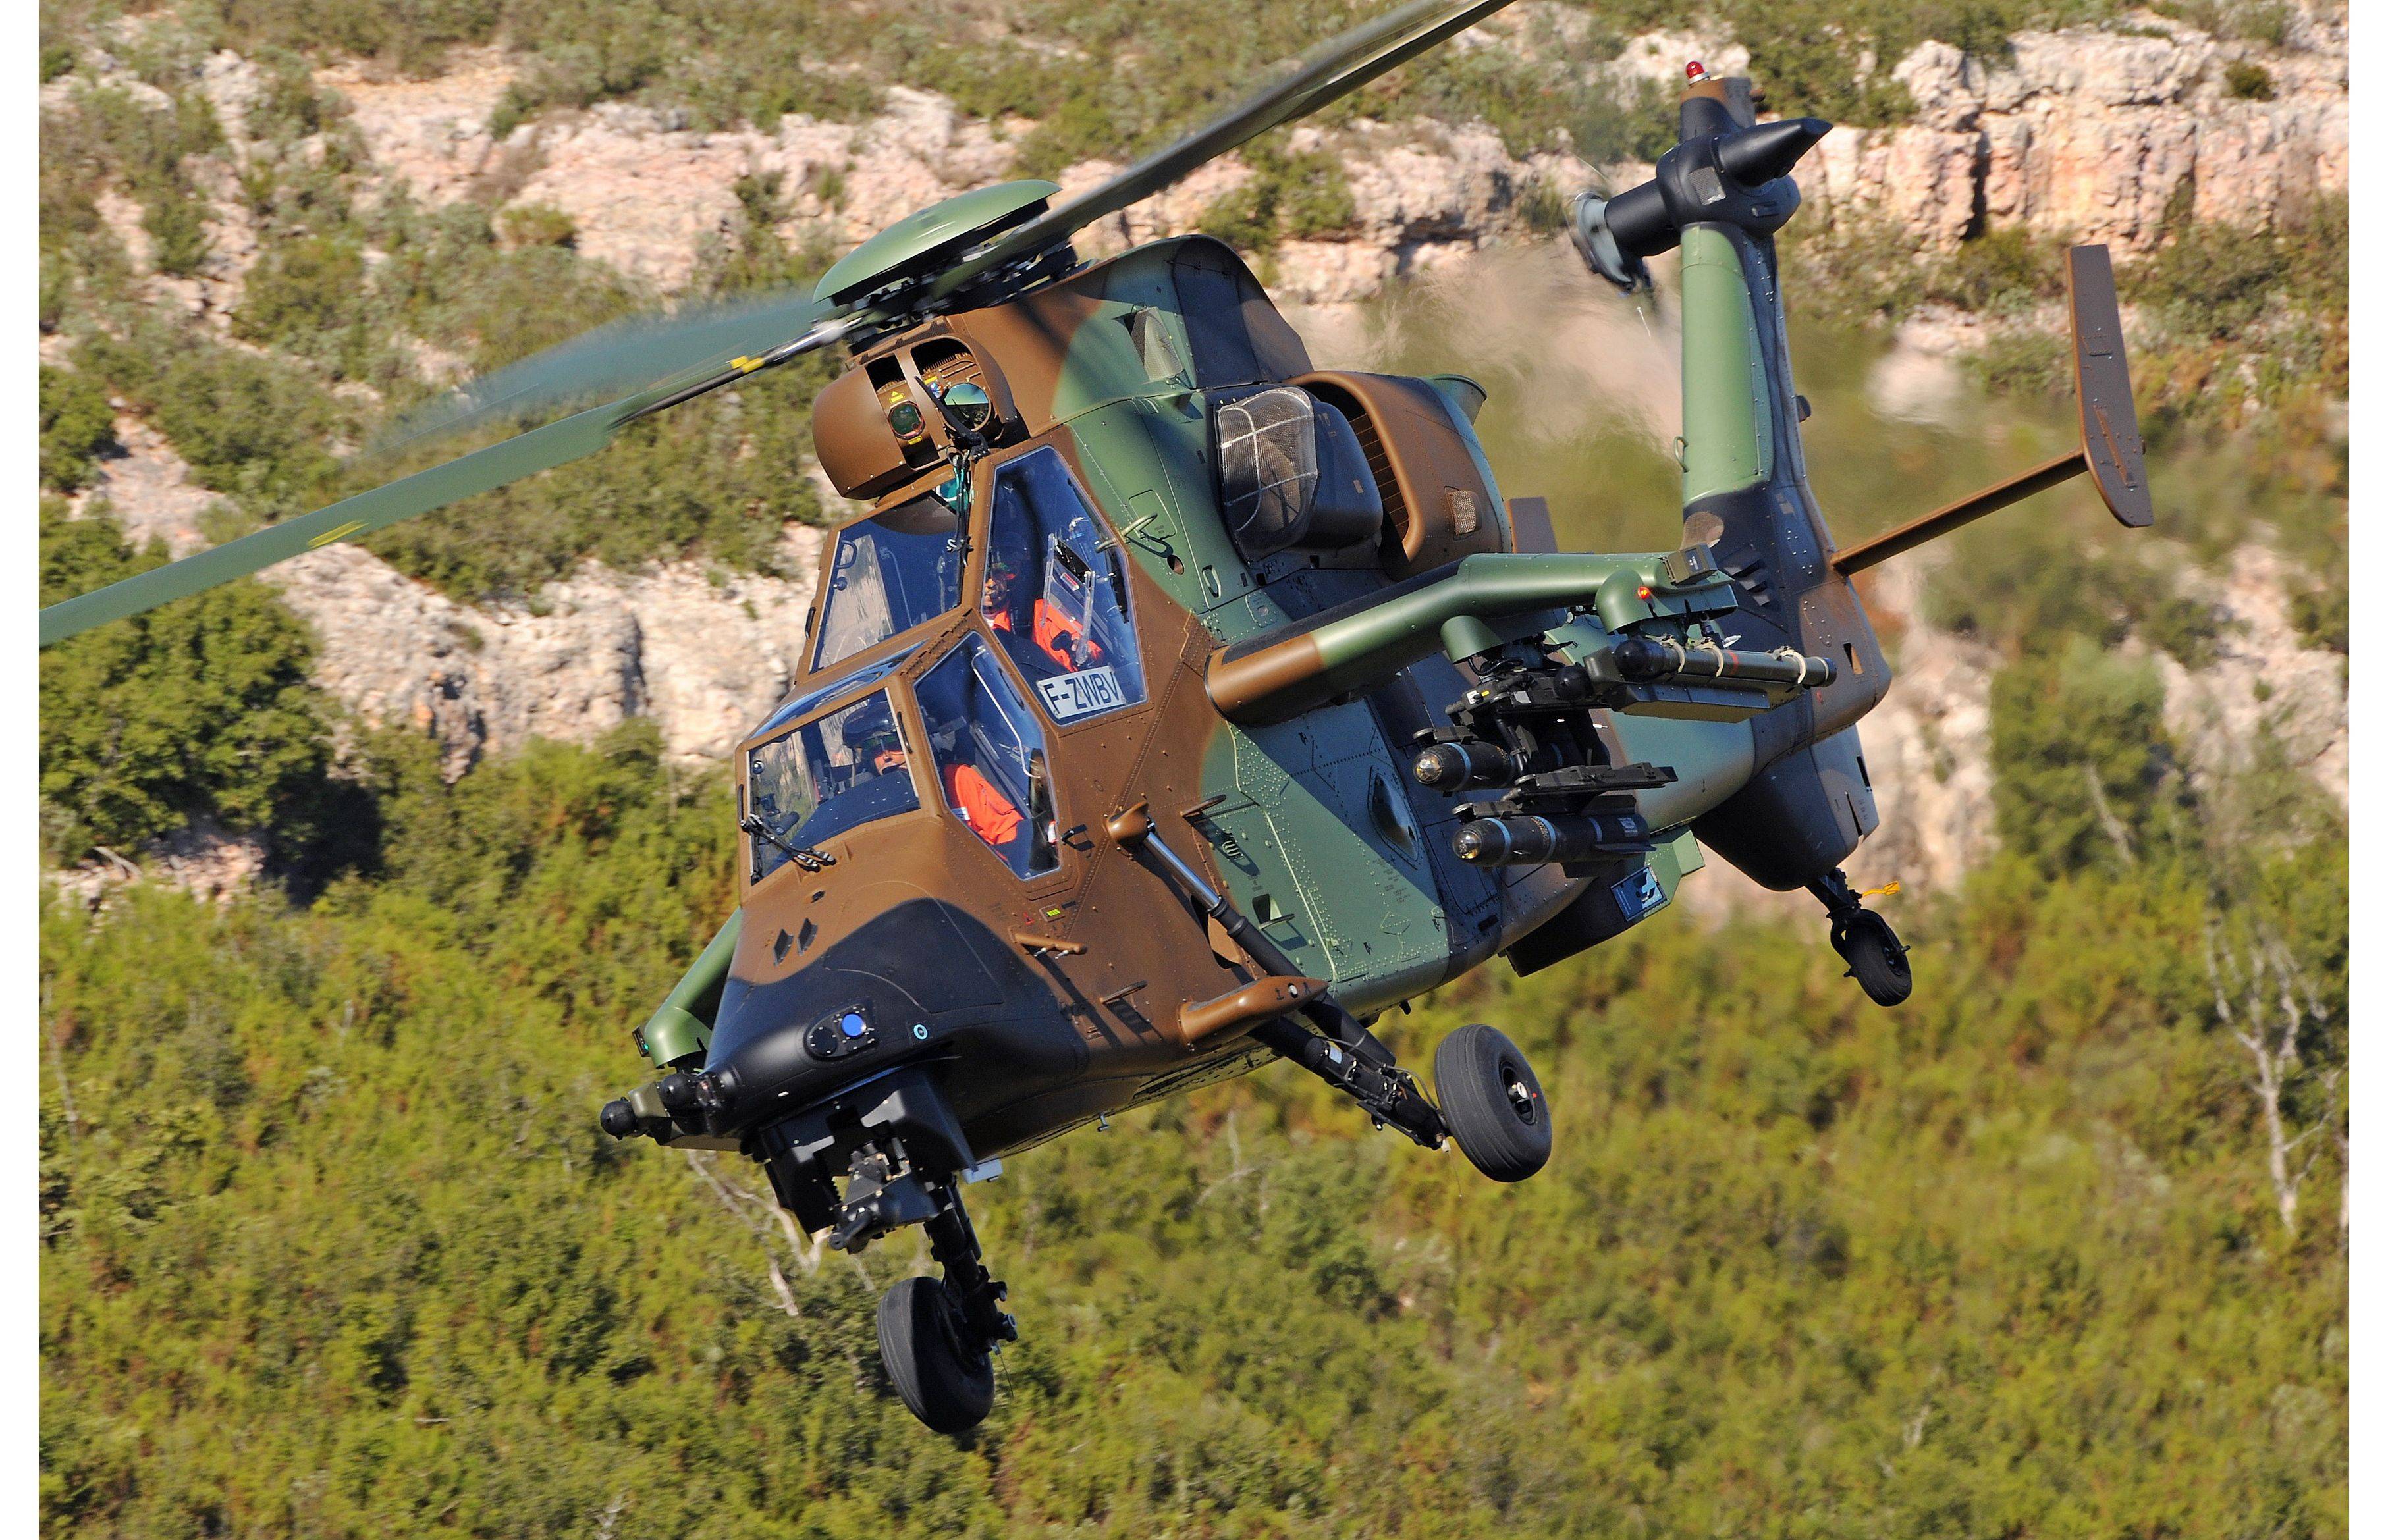 虎式武装直升机空中机动性能续航力机炮射击精确度方面均优于ah-64